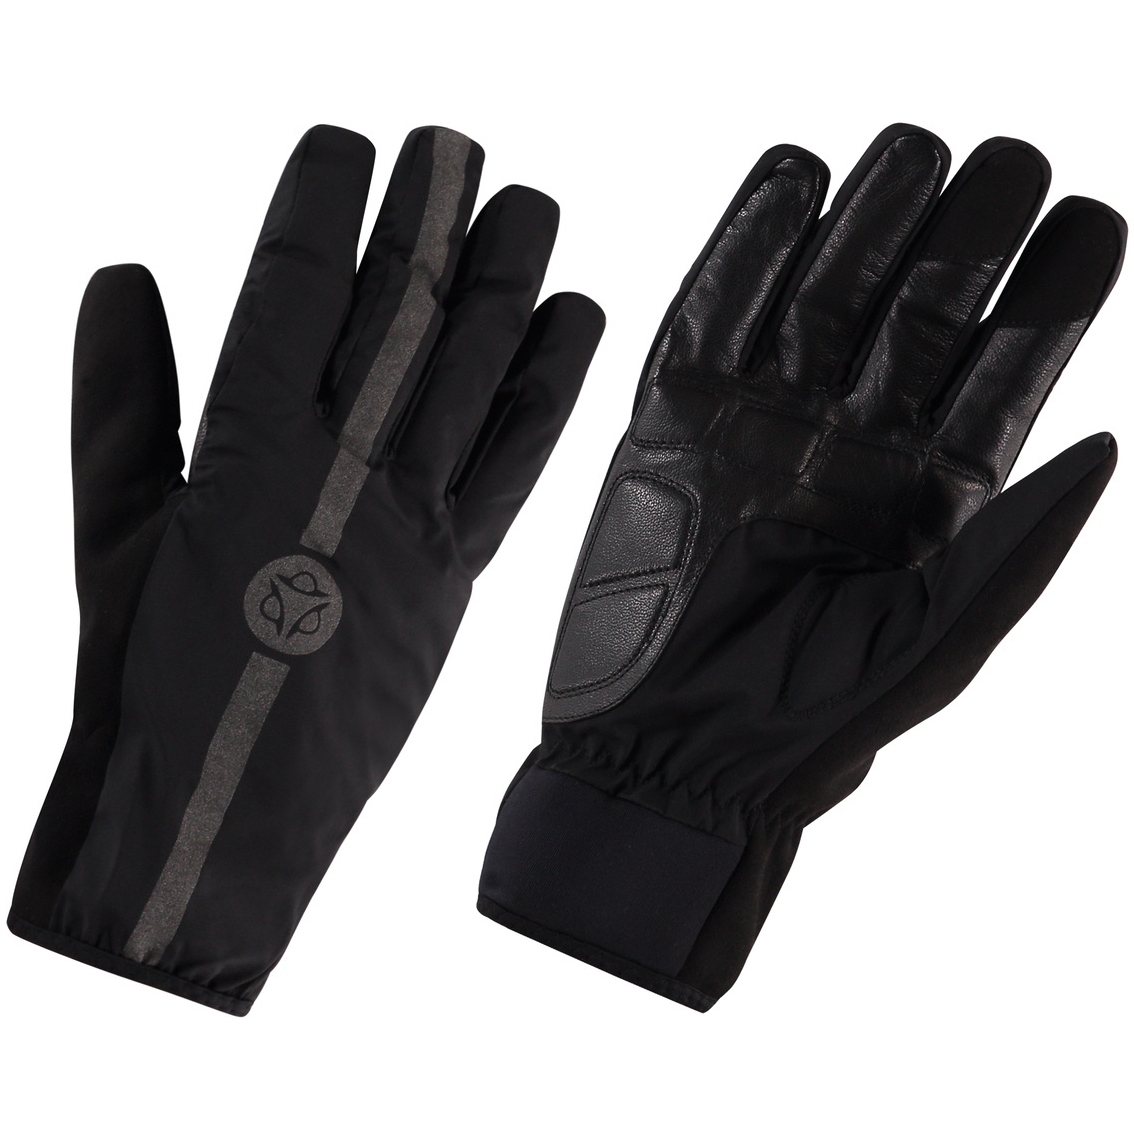 Produktbild von AGU Commuter Winter Regen-Handschuhe - schwarz